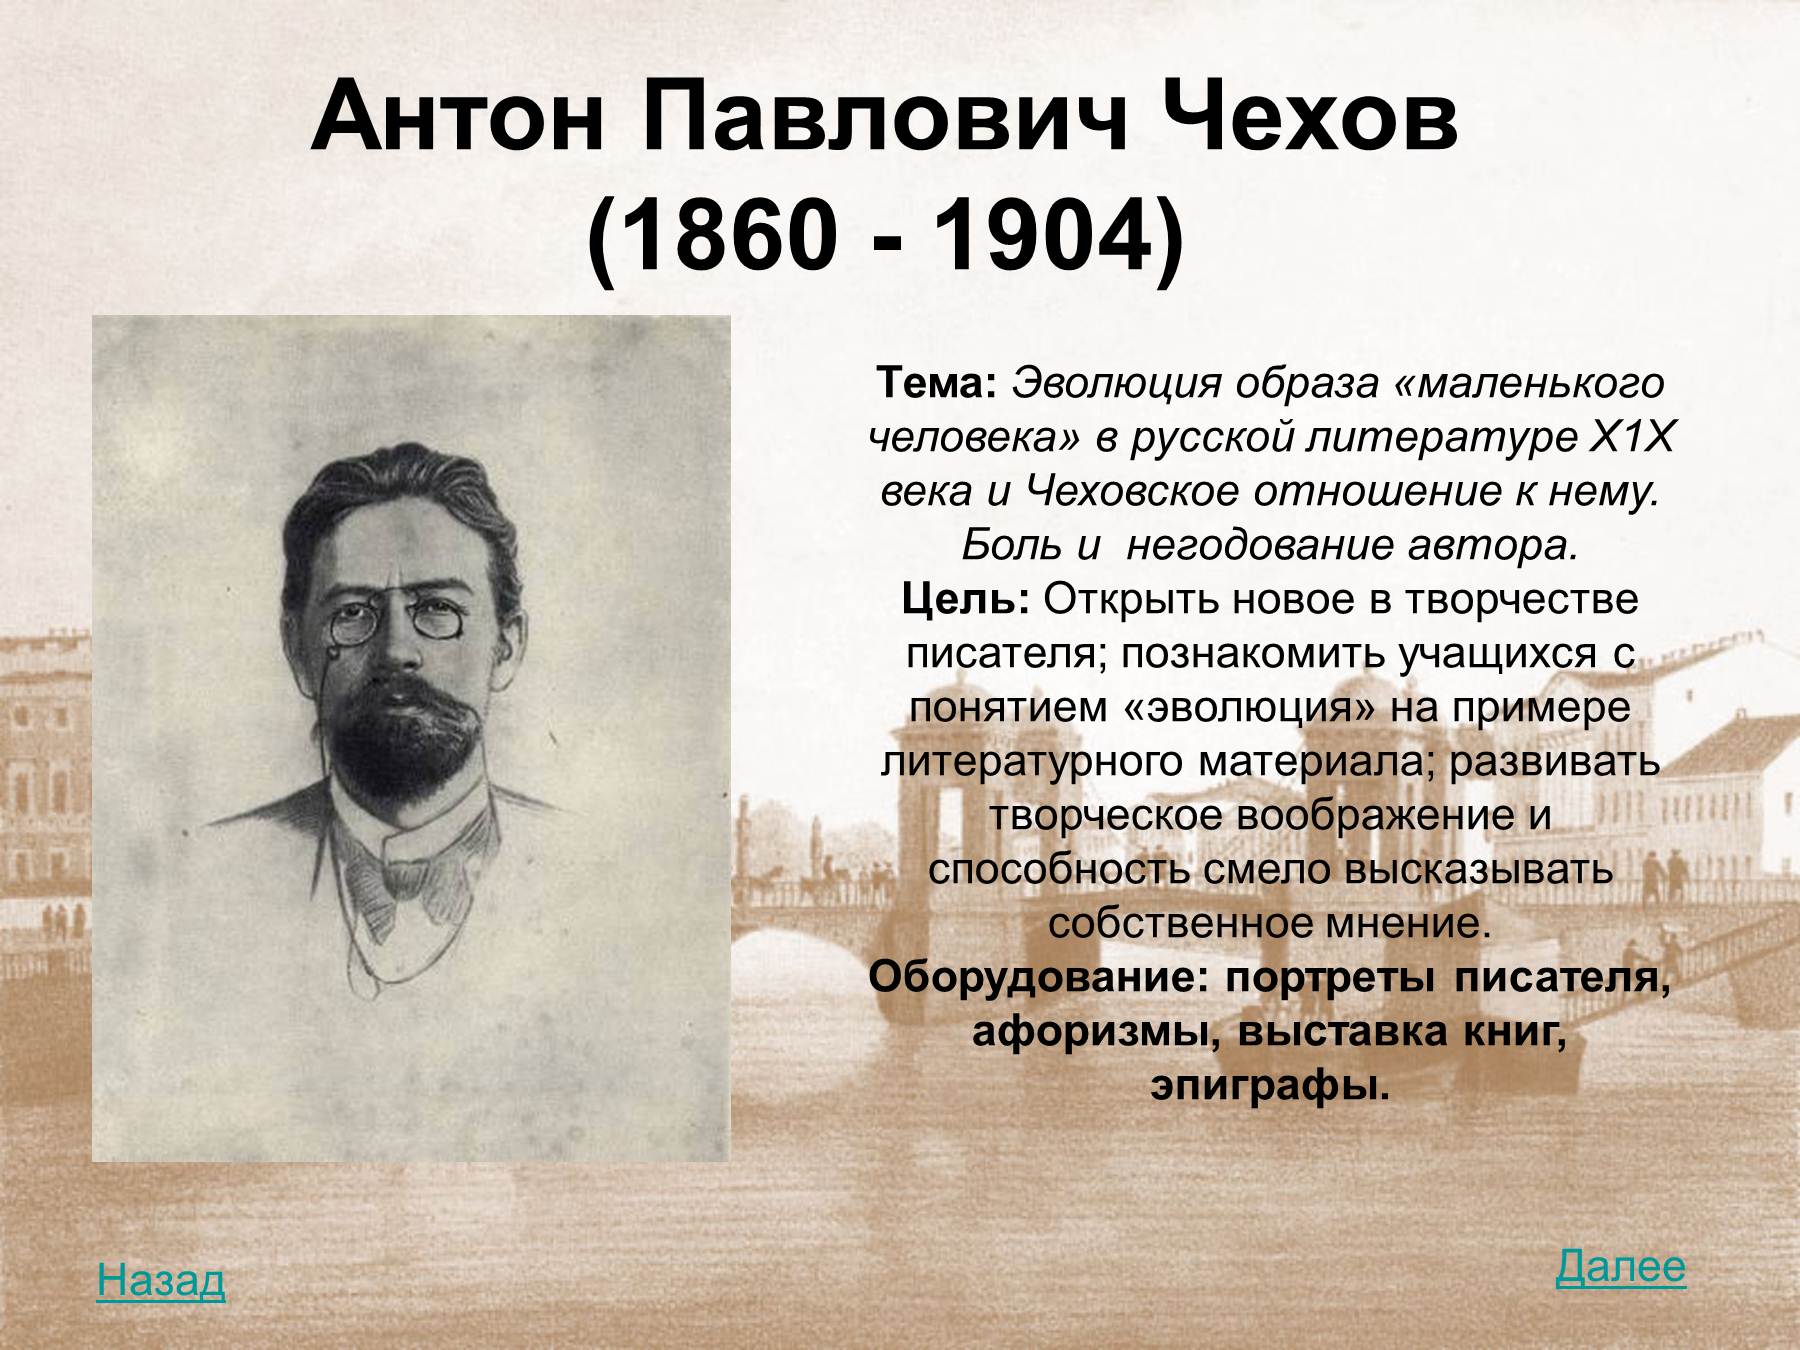 Произведения антона павловича. Чехов а.п. (1860-1904). Чехов 1904.